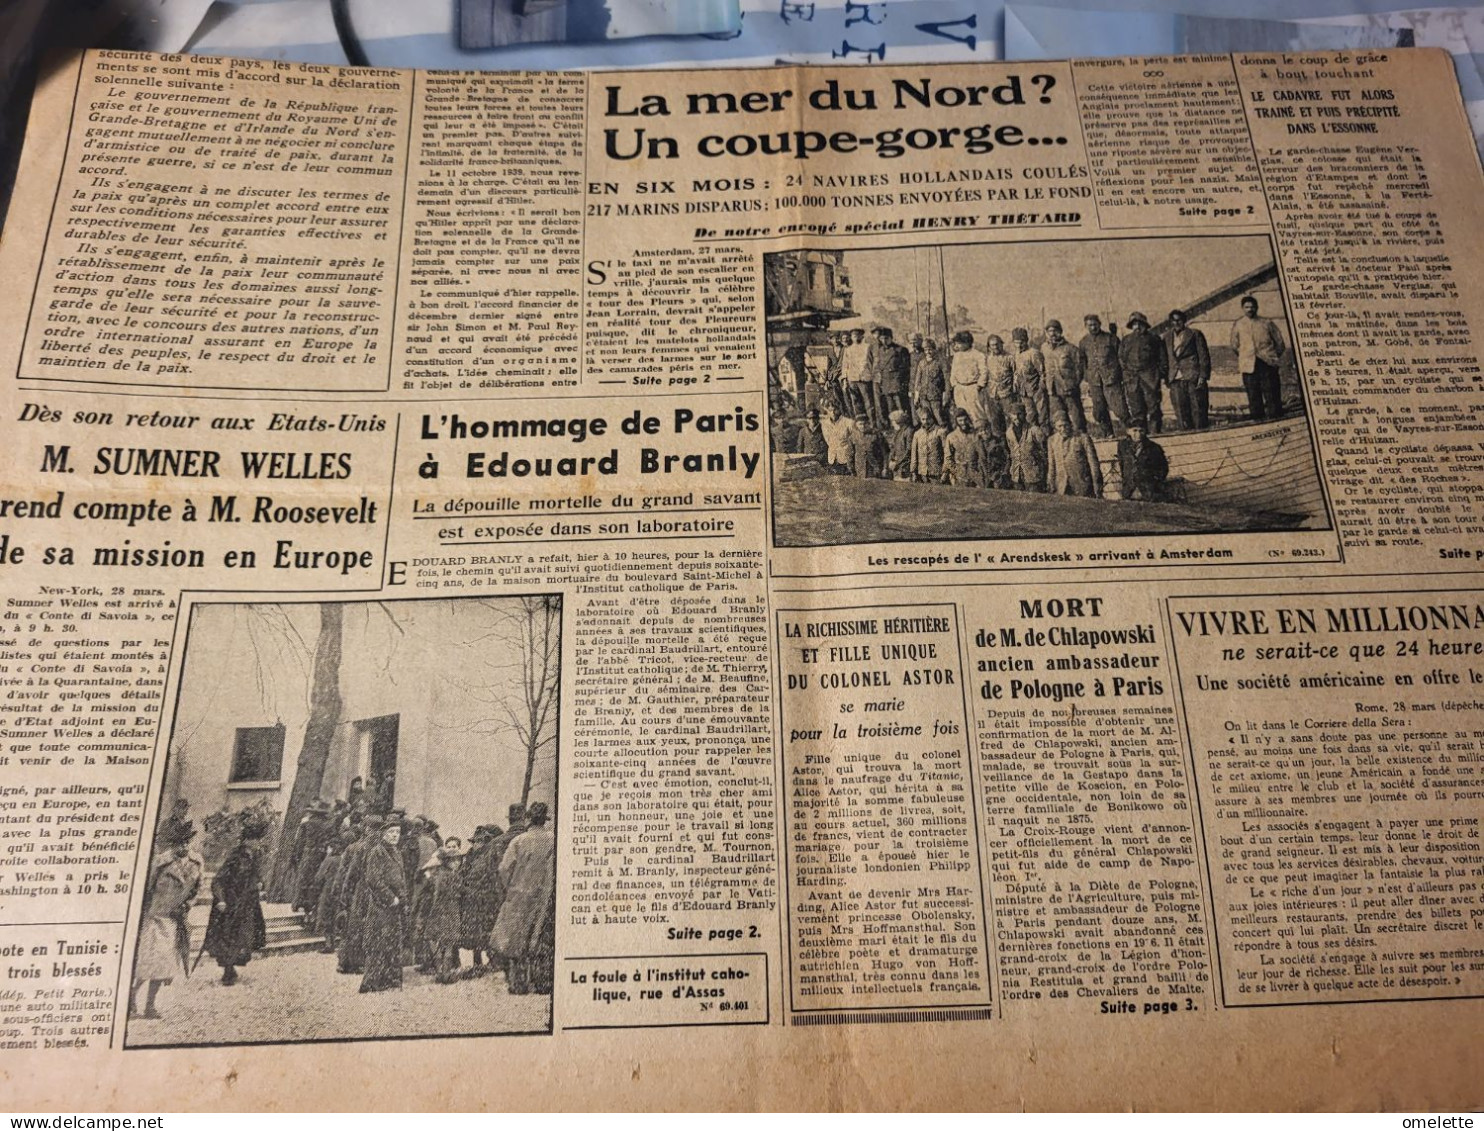 P P 40/PAS DE PAIX NI D ARMISTICE/SOUS MARIN ALLEMAND /VICTOIRE SYLT /EDOUARD BRANLY MORT - Le Petit Parisien